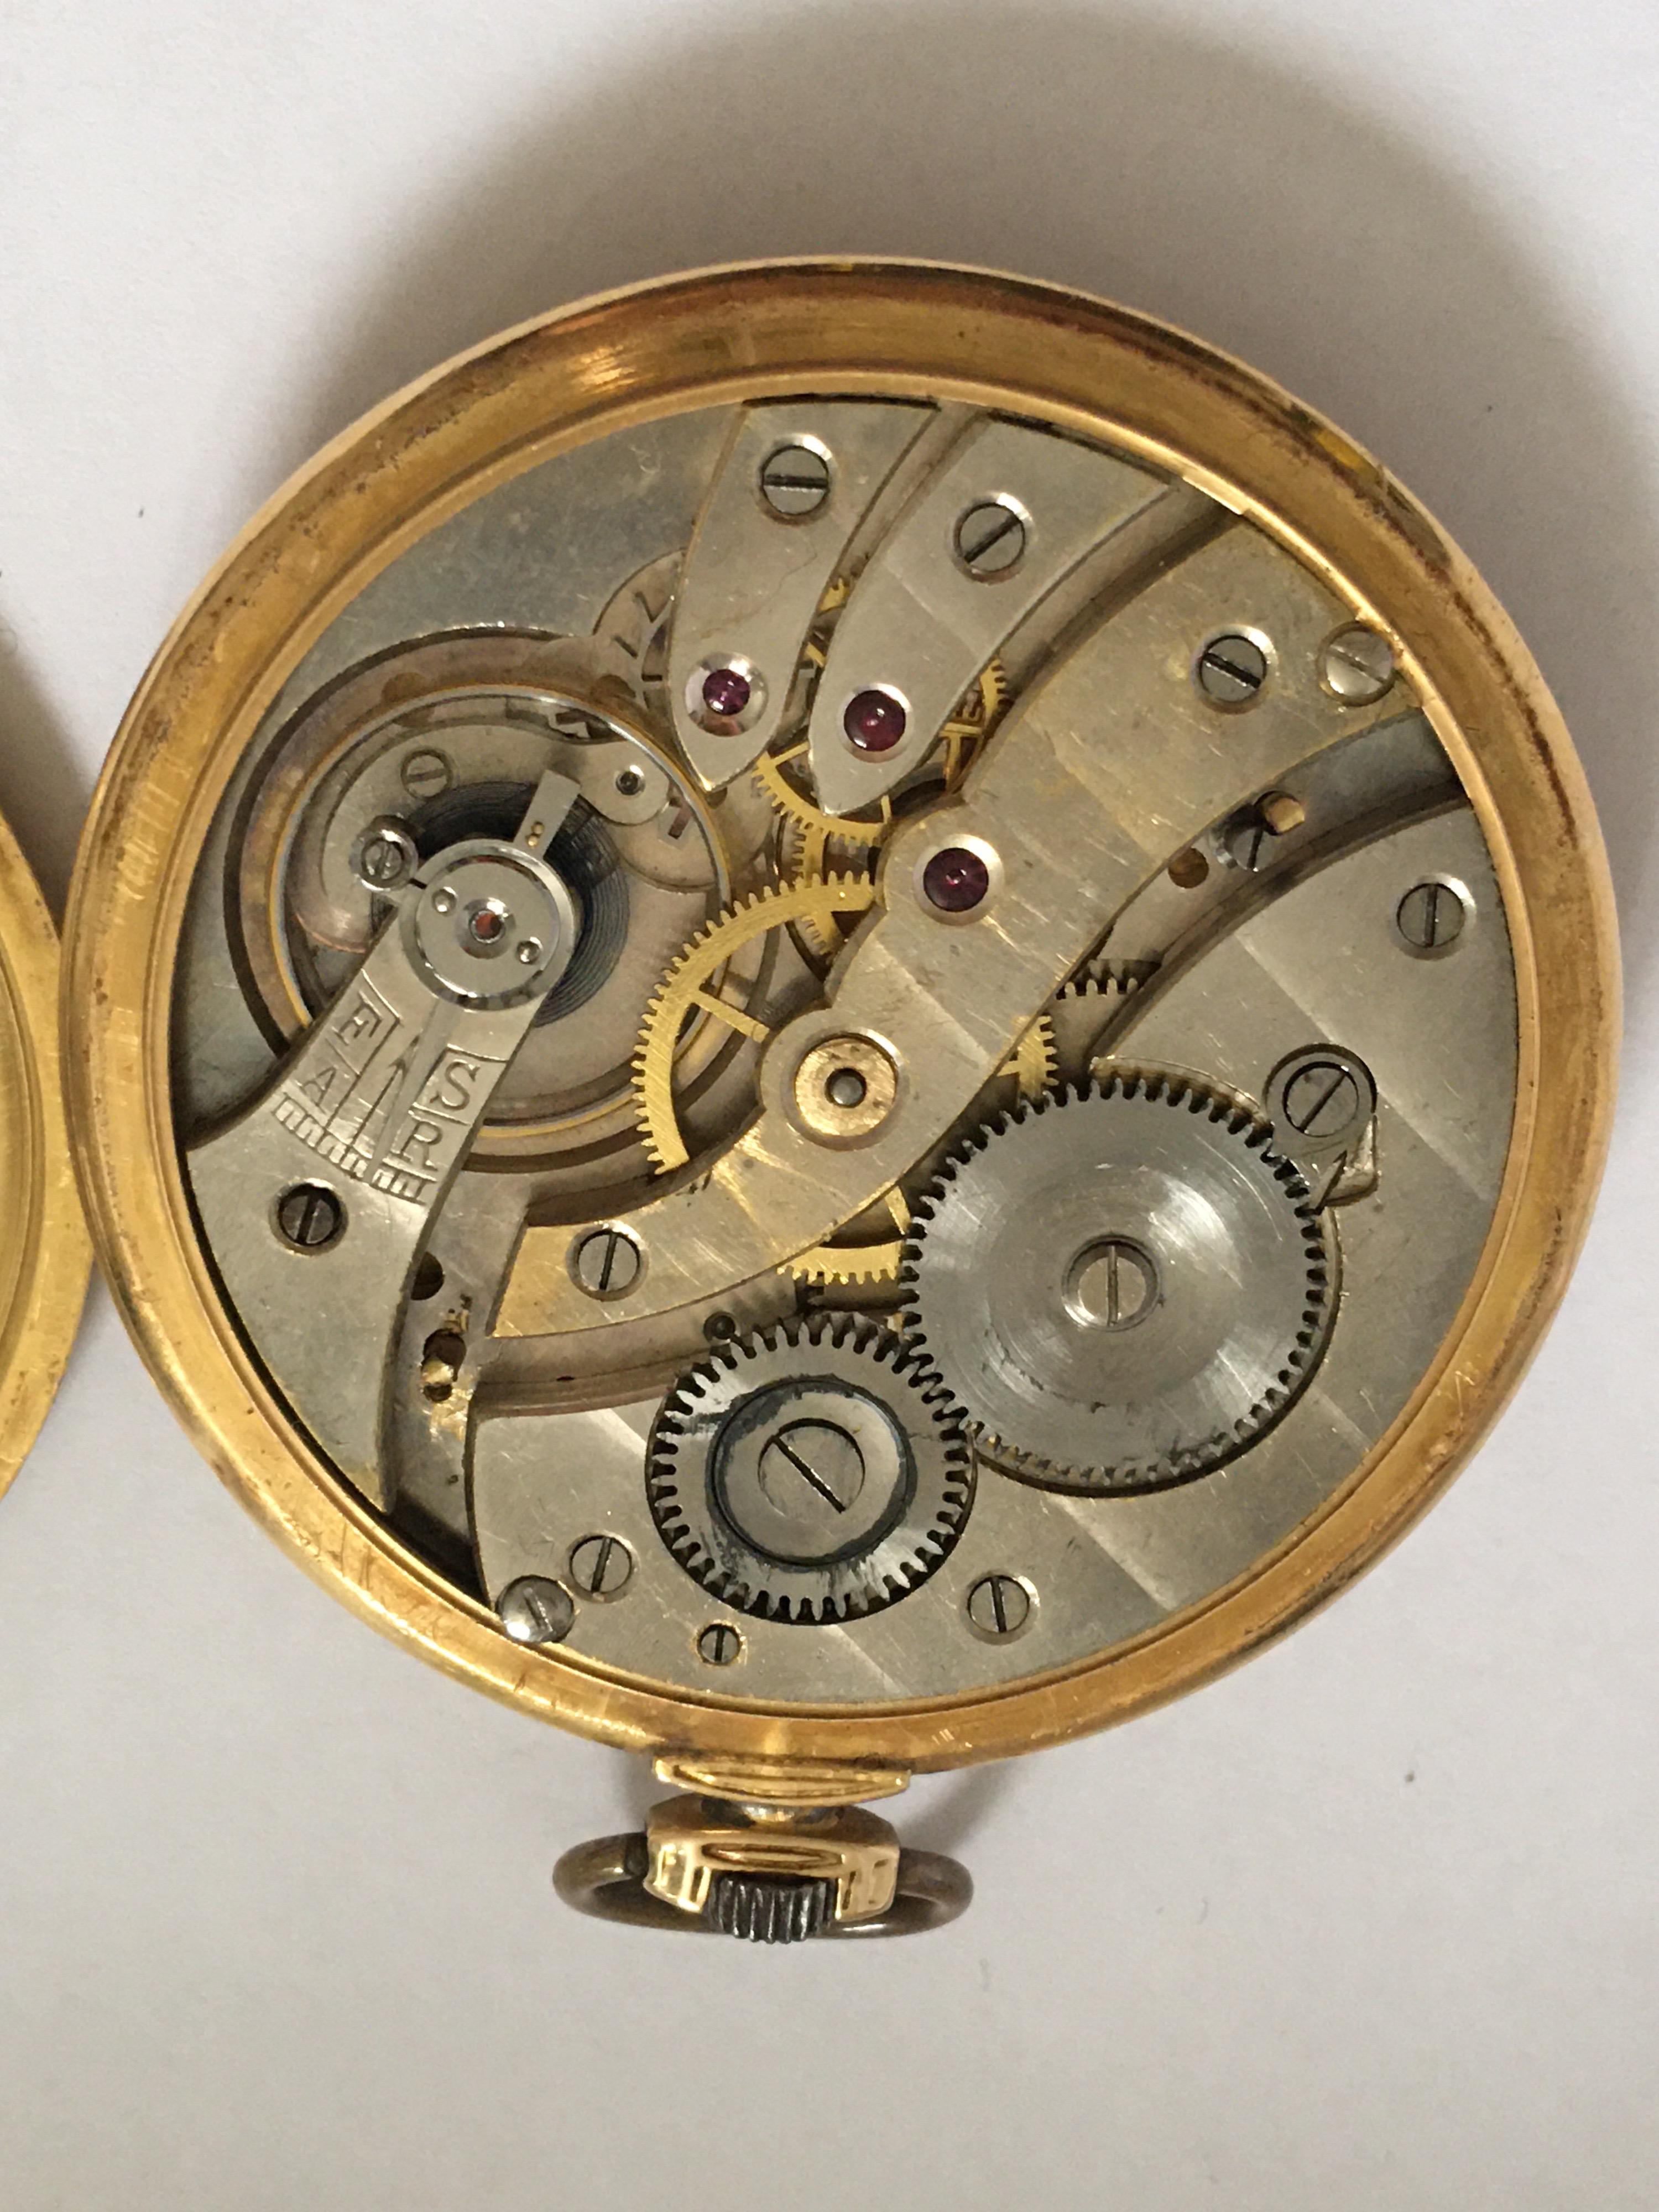 Antique 14 Karat Gold and Enamel Dress / Pocket Watch For Sale at 